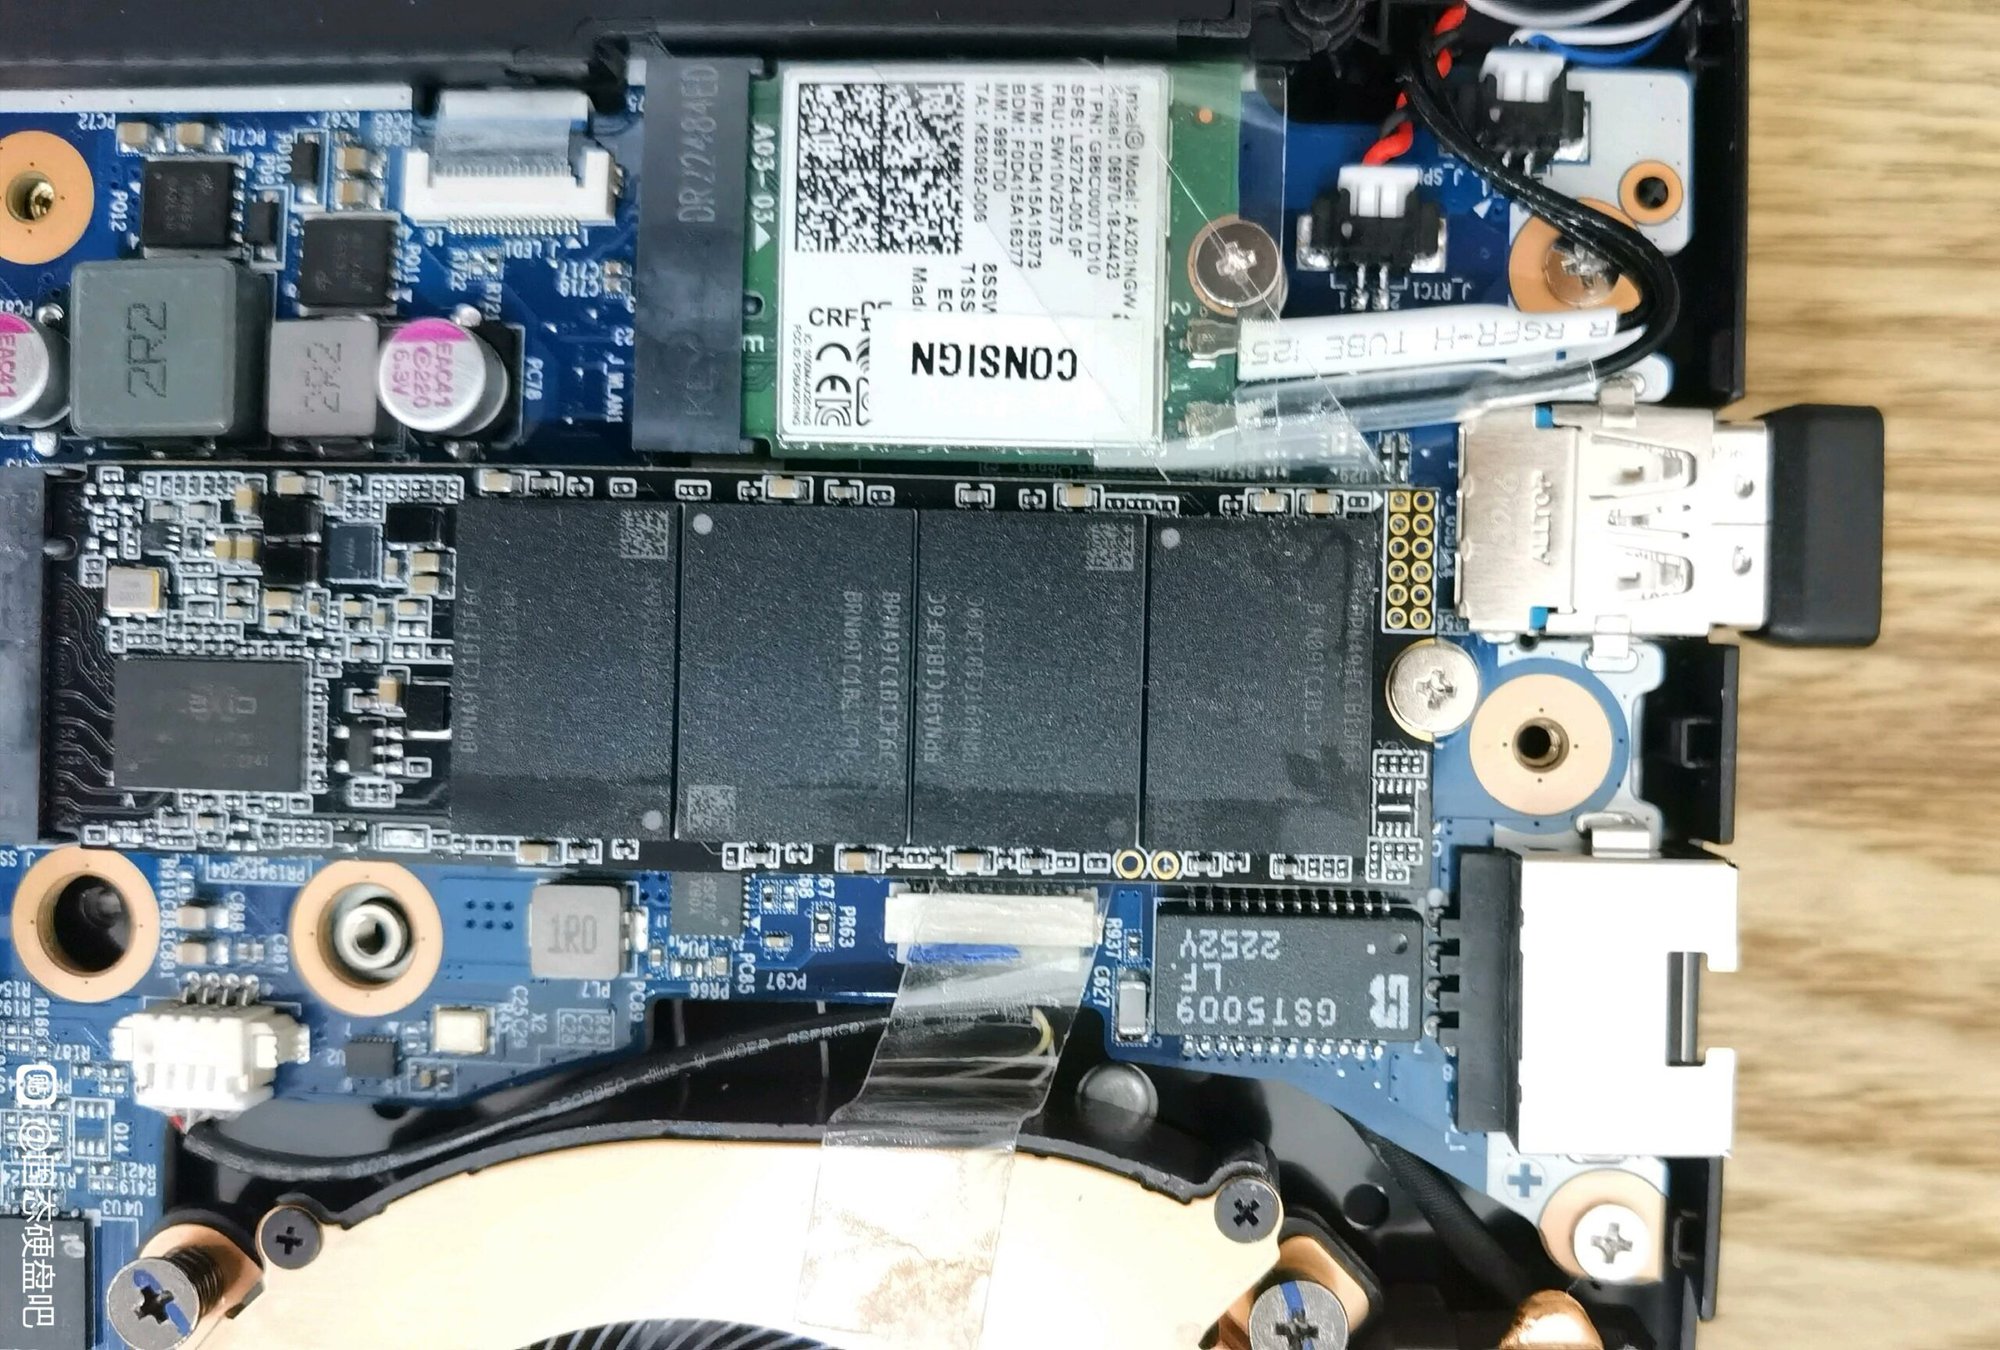 Mẫu ổ SSD nổi tiếng của Samsung bị làm giả tràn lan, tinh vi đến mức phần mềm của hãng cũng không phát hiện được - Ảnh 2.